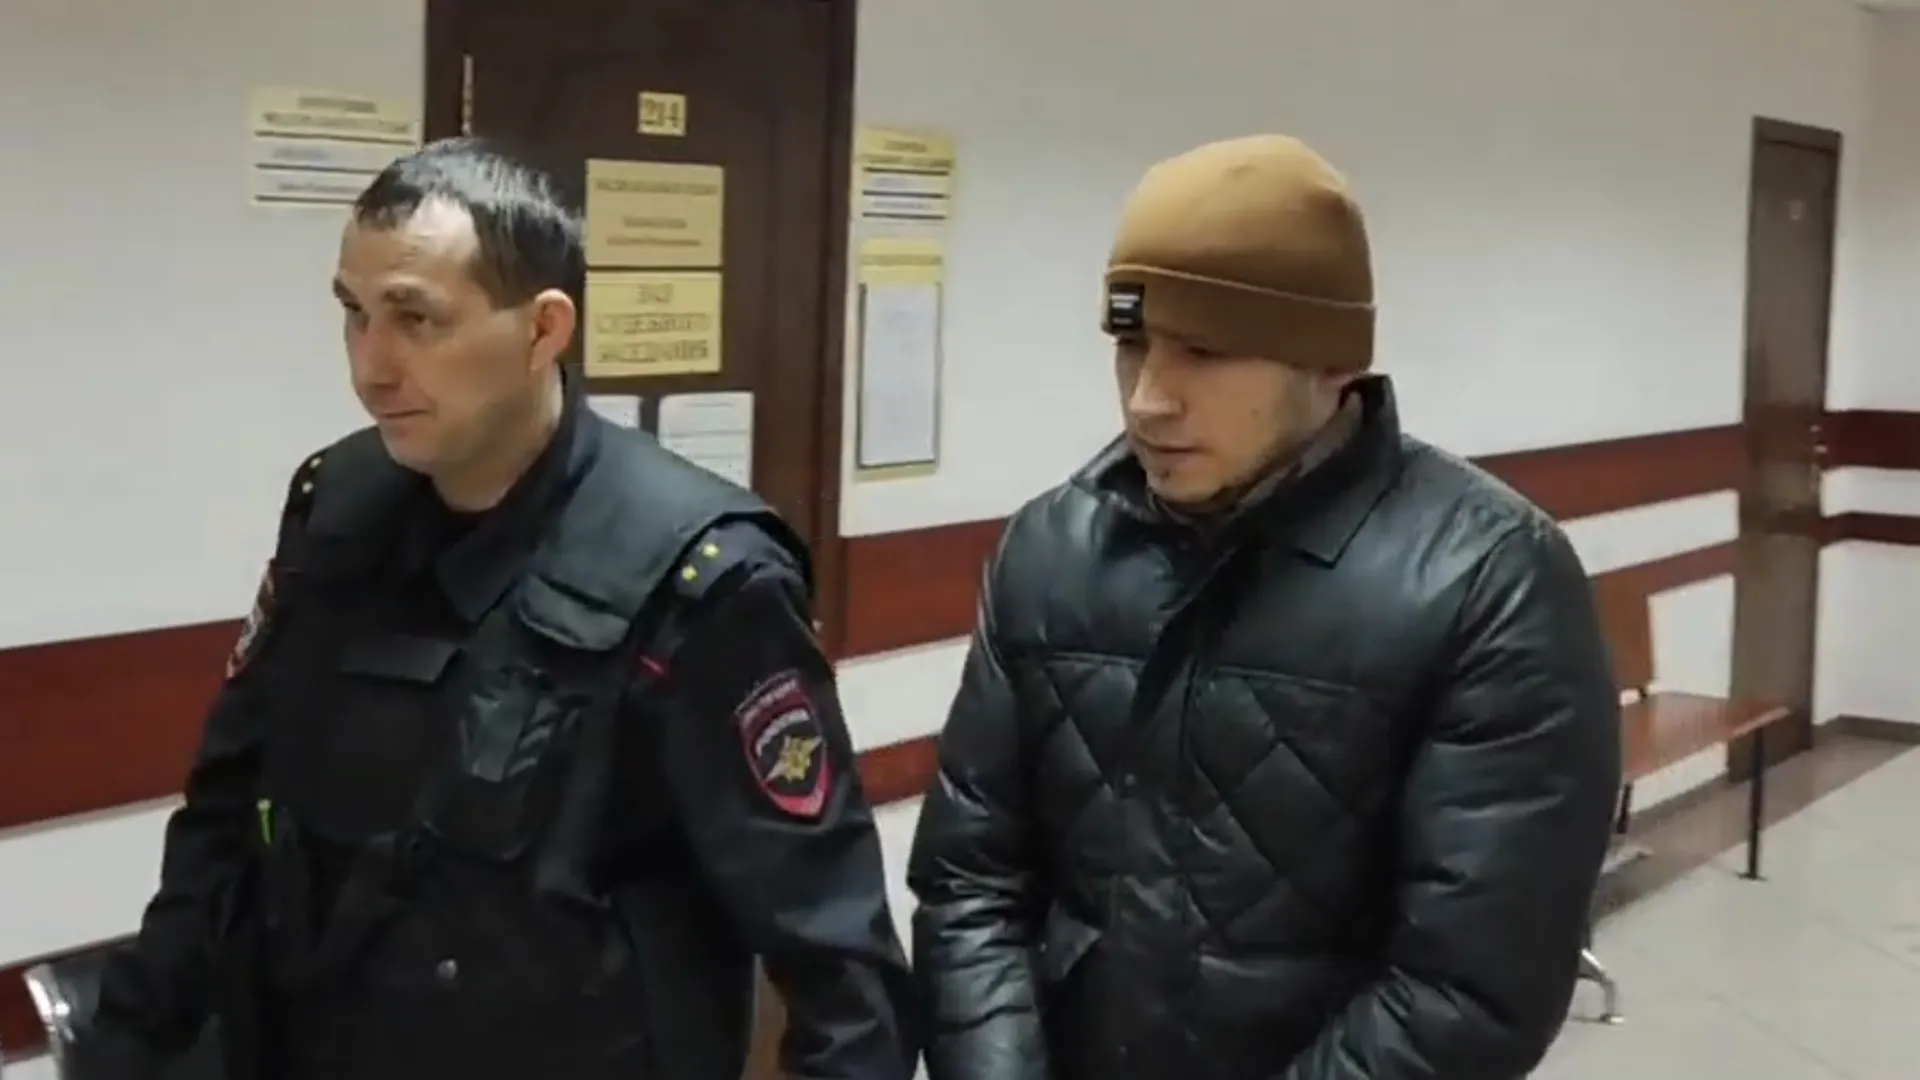 Избивших 76-летнего жителя Щелкова мигрантов арестовали по решению суда